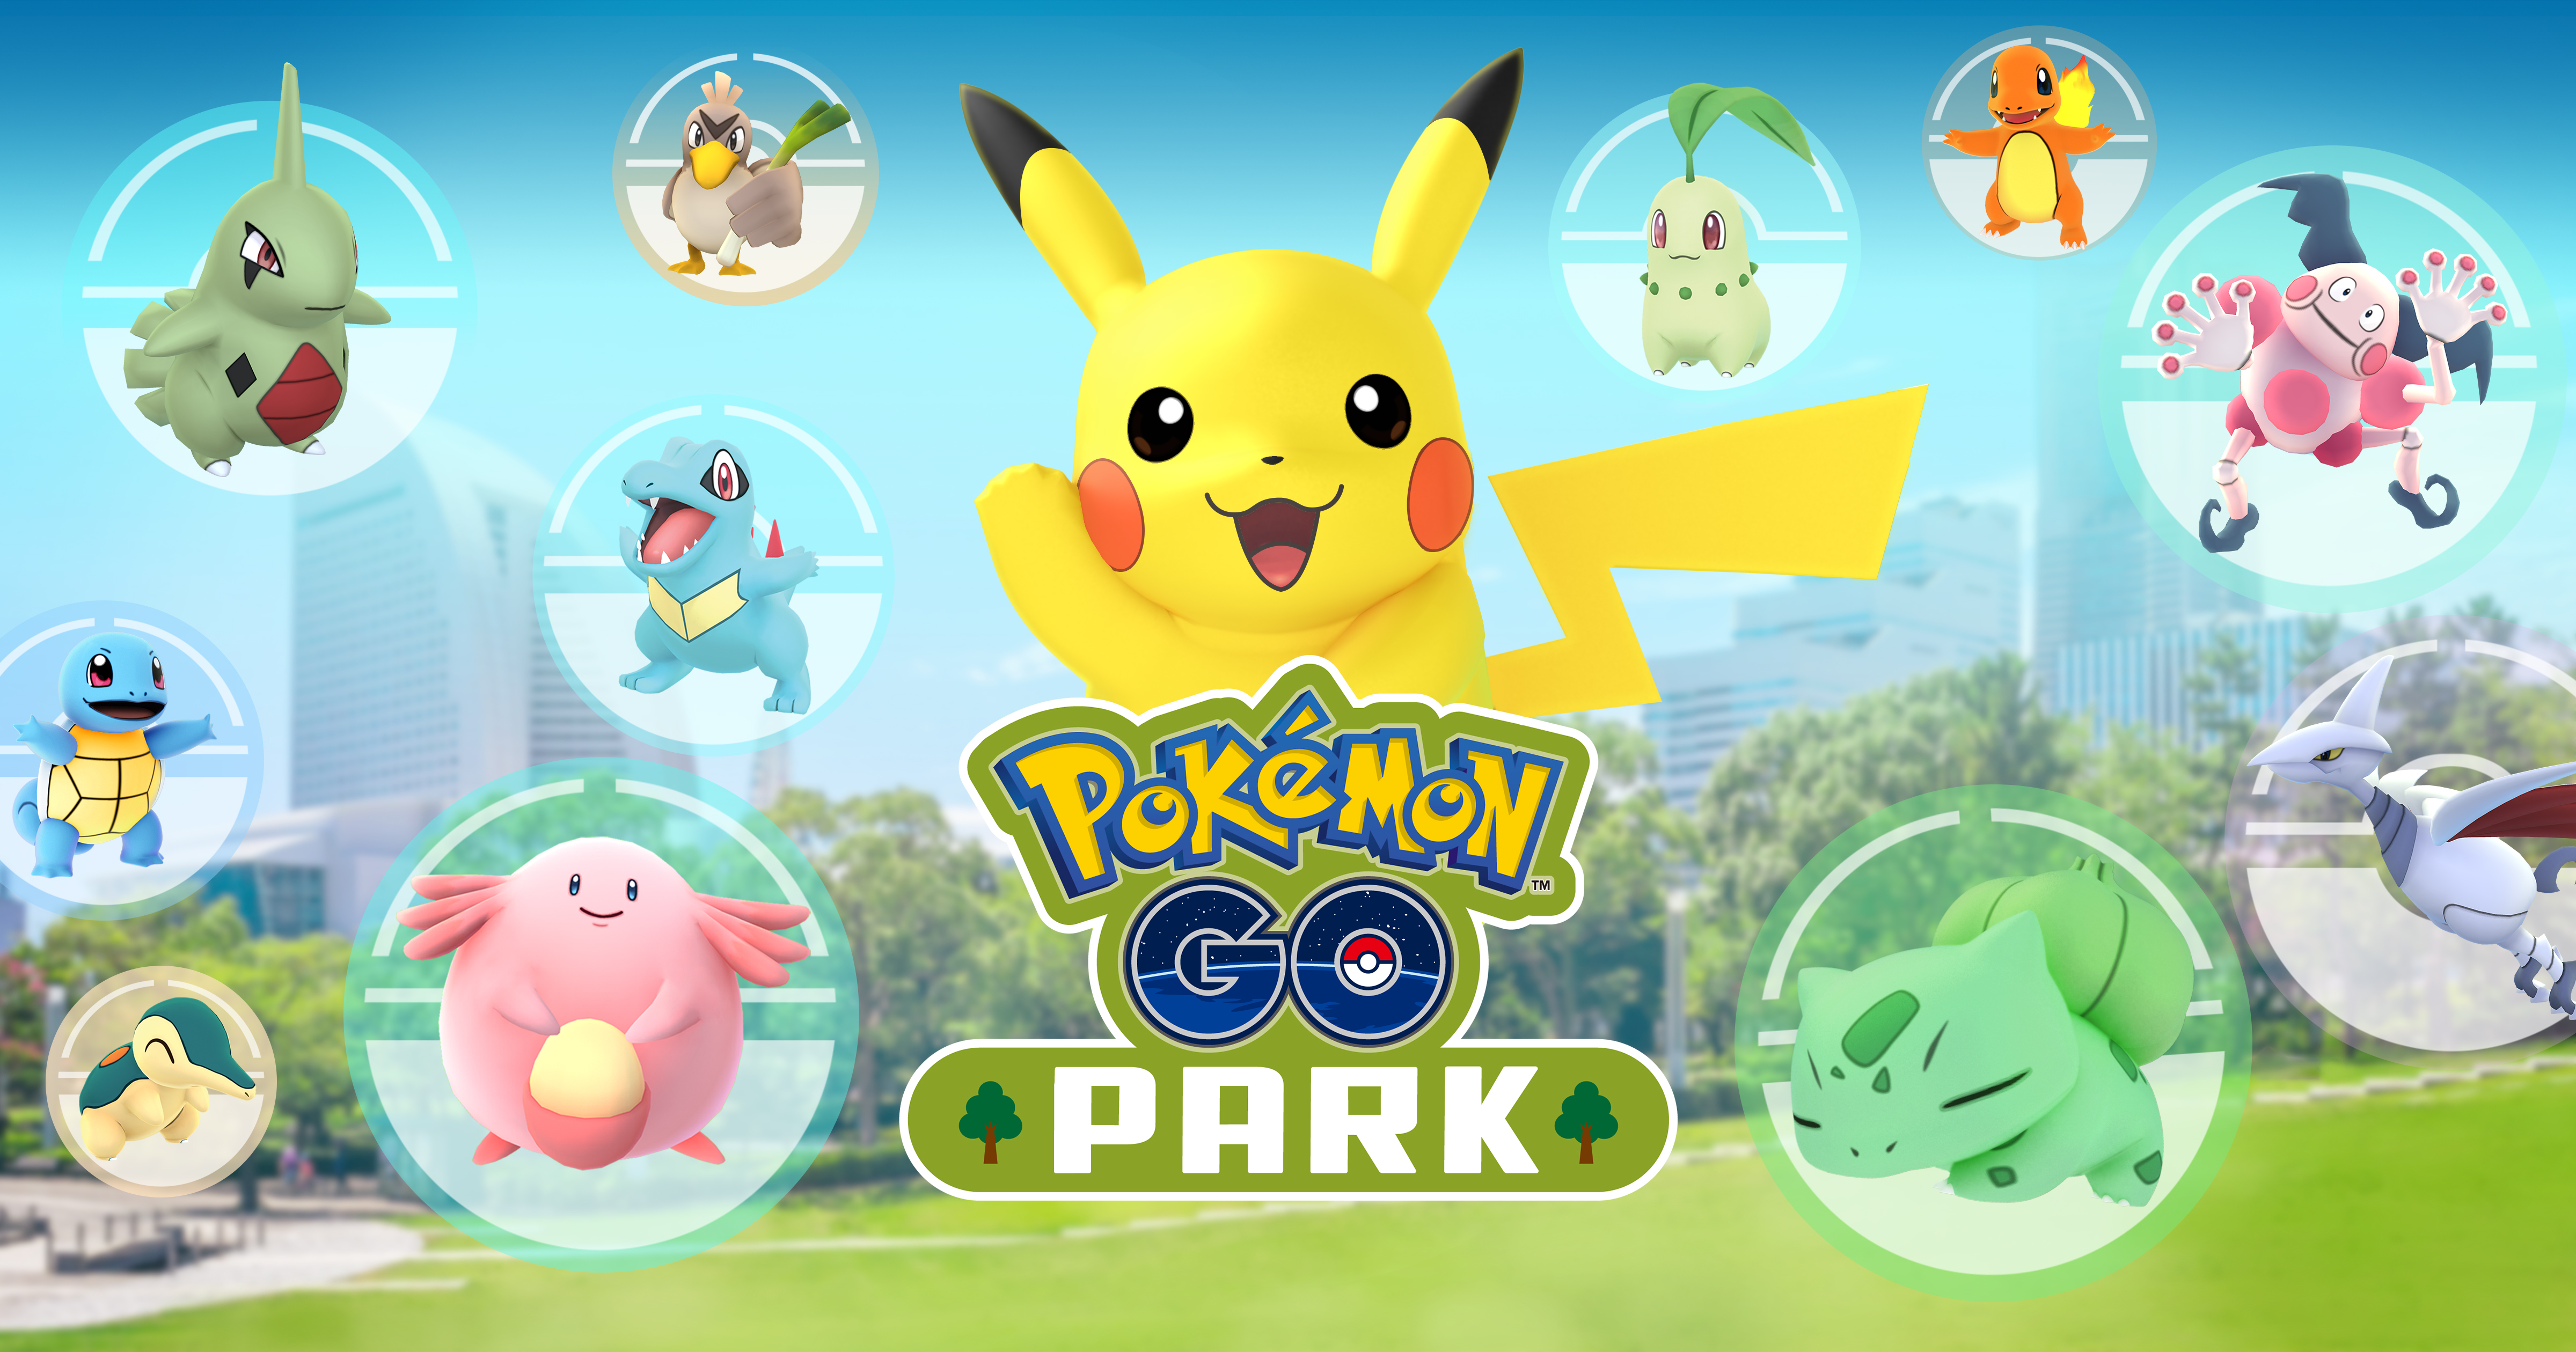 ポケモンGO、国内初の公式イベント「Pokémon GO PARK」を開催！海外限定ポケモンもゲット可能に